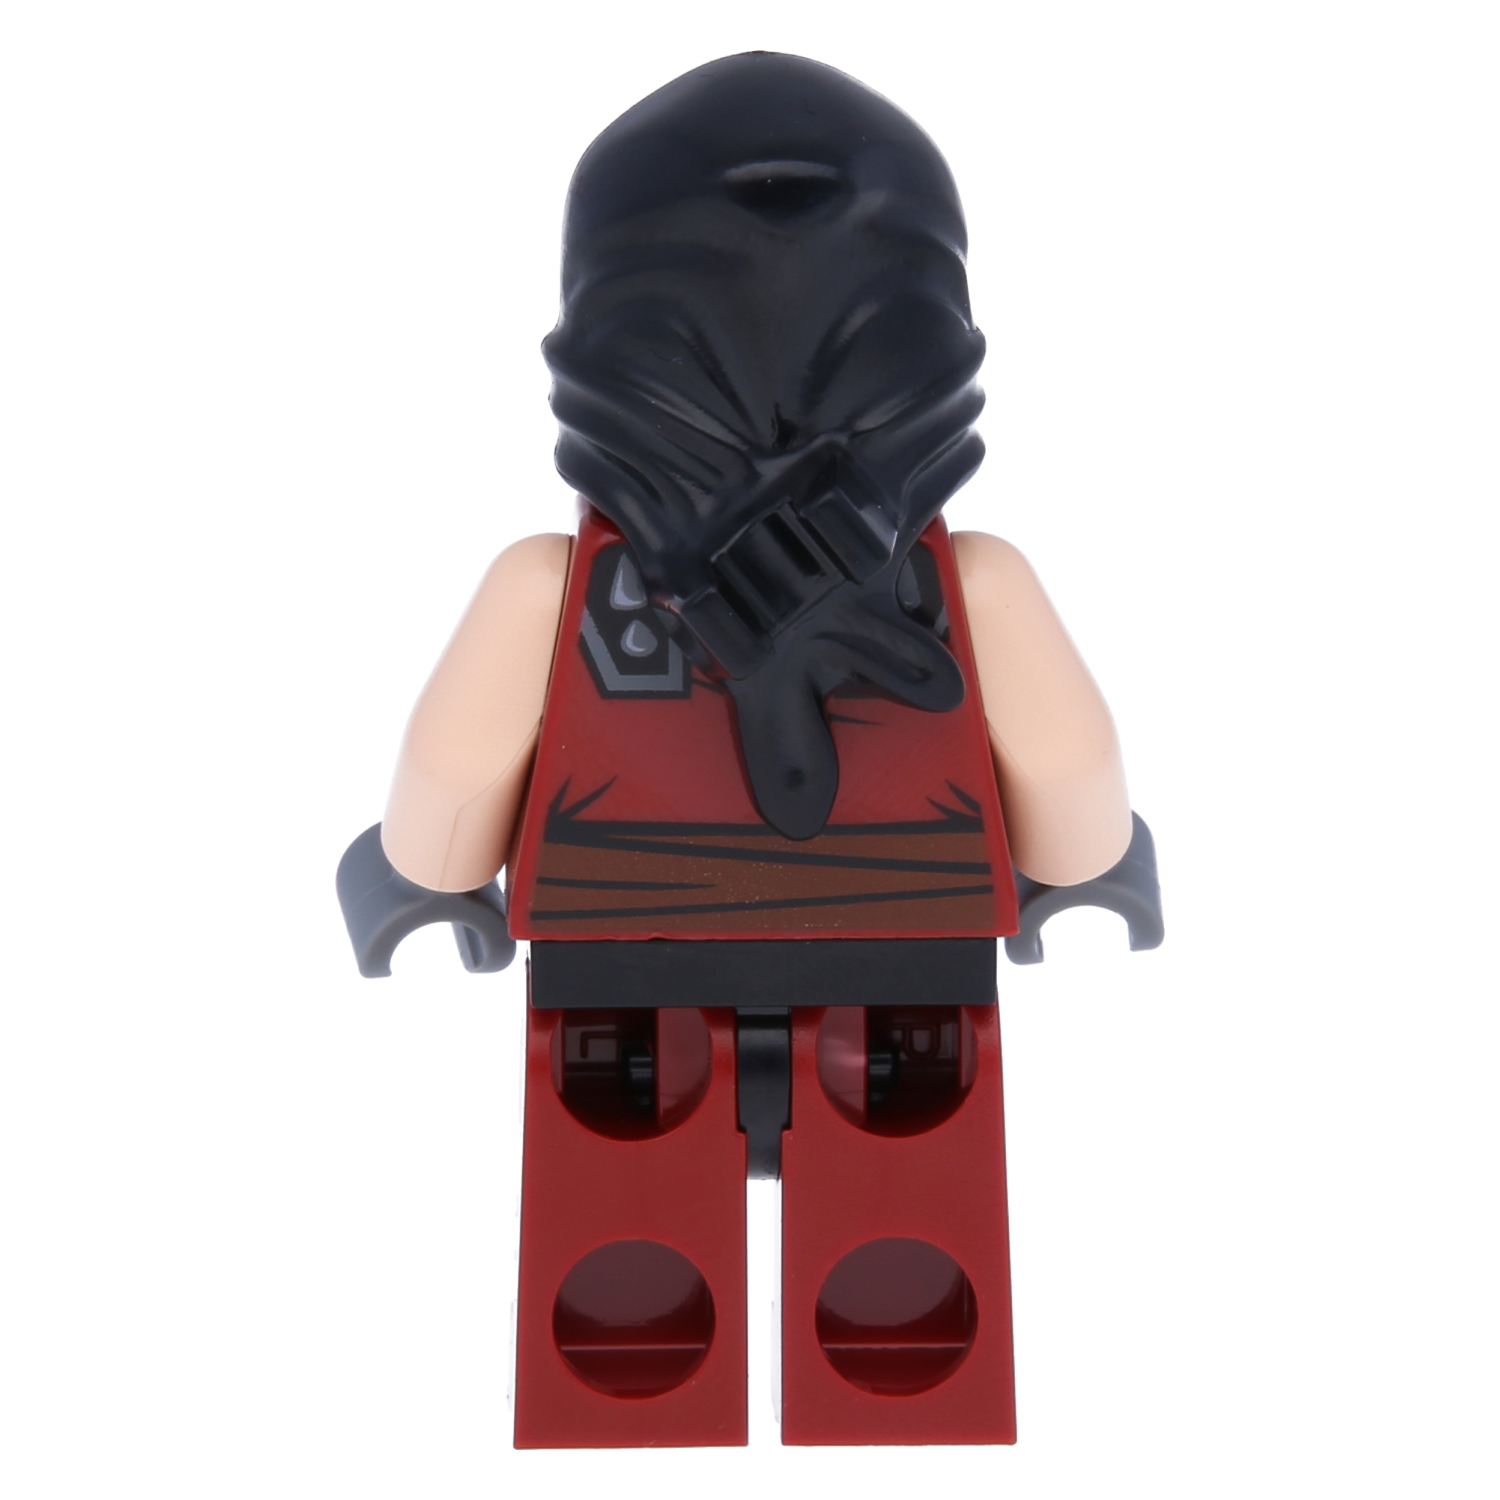 Lego teen mutant ninja turtles mini figure - dark ninja